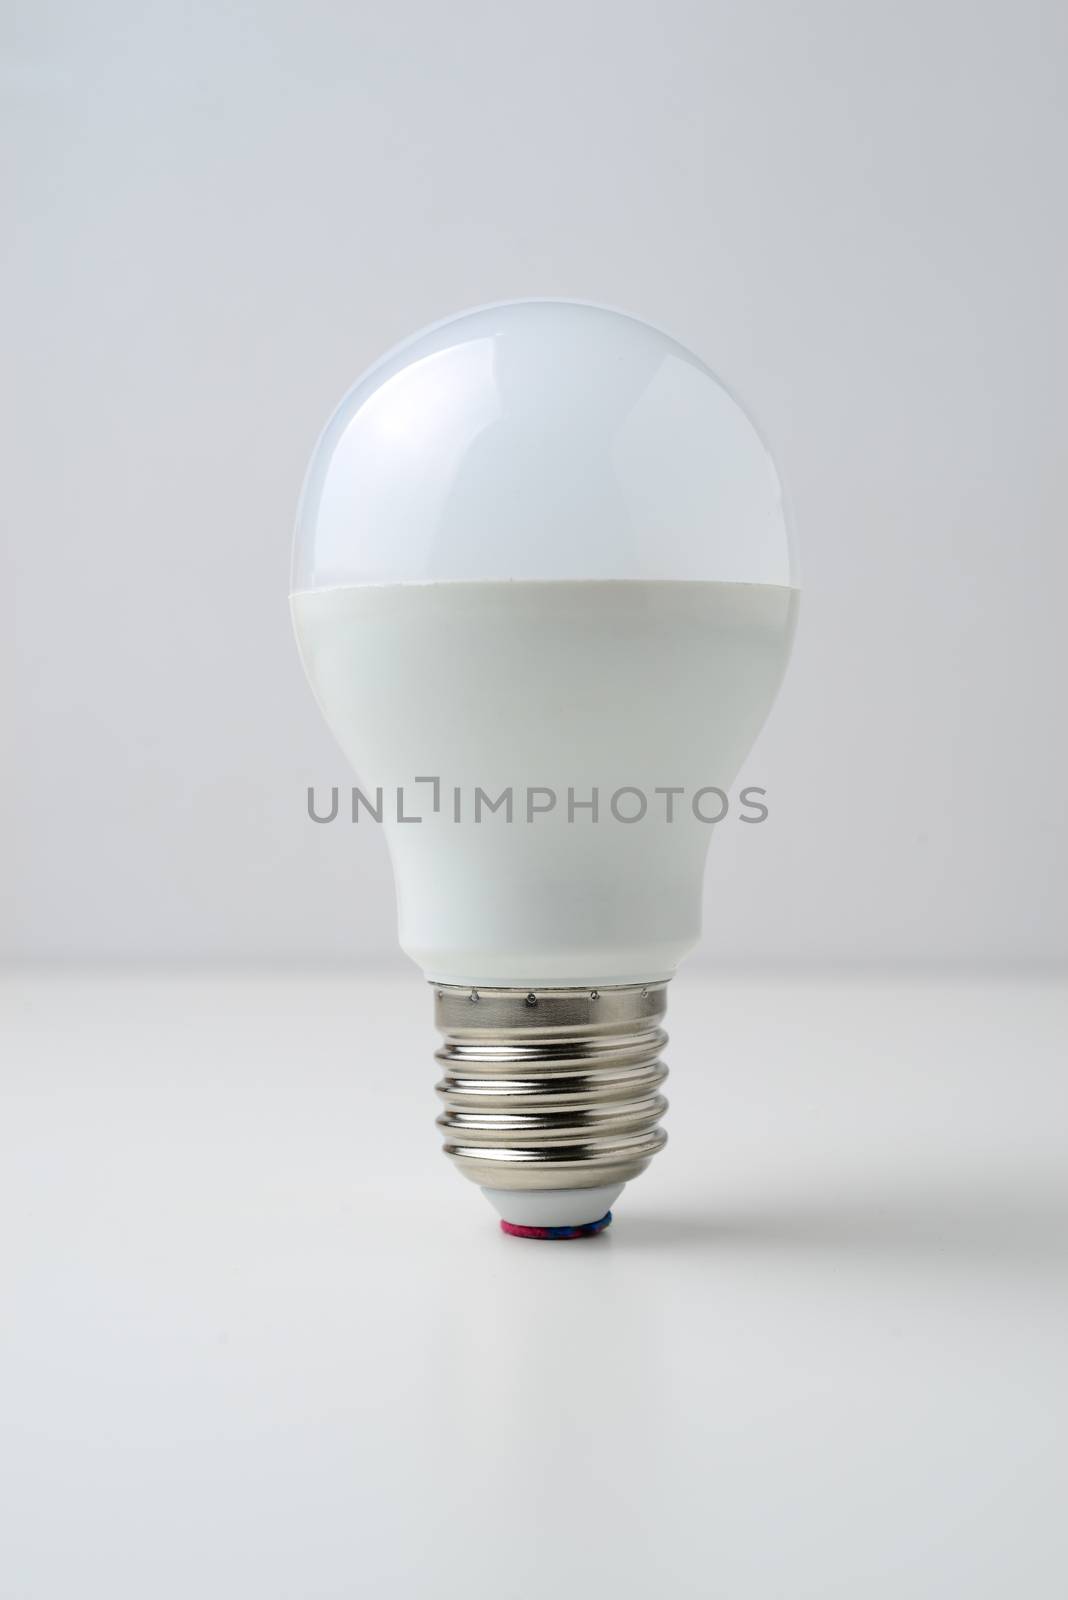 LED lights bulb by antpkr